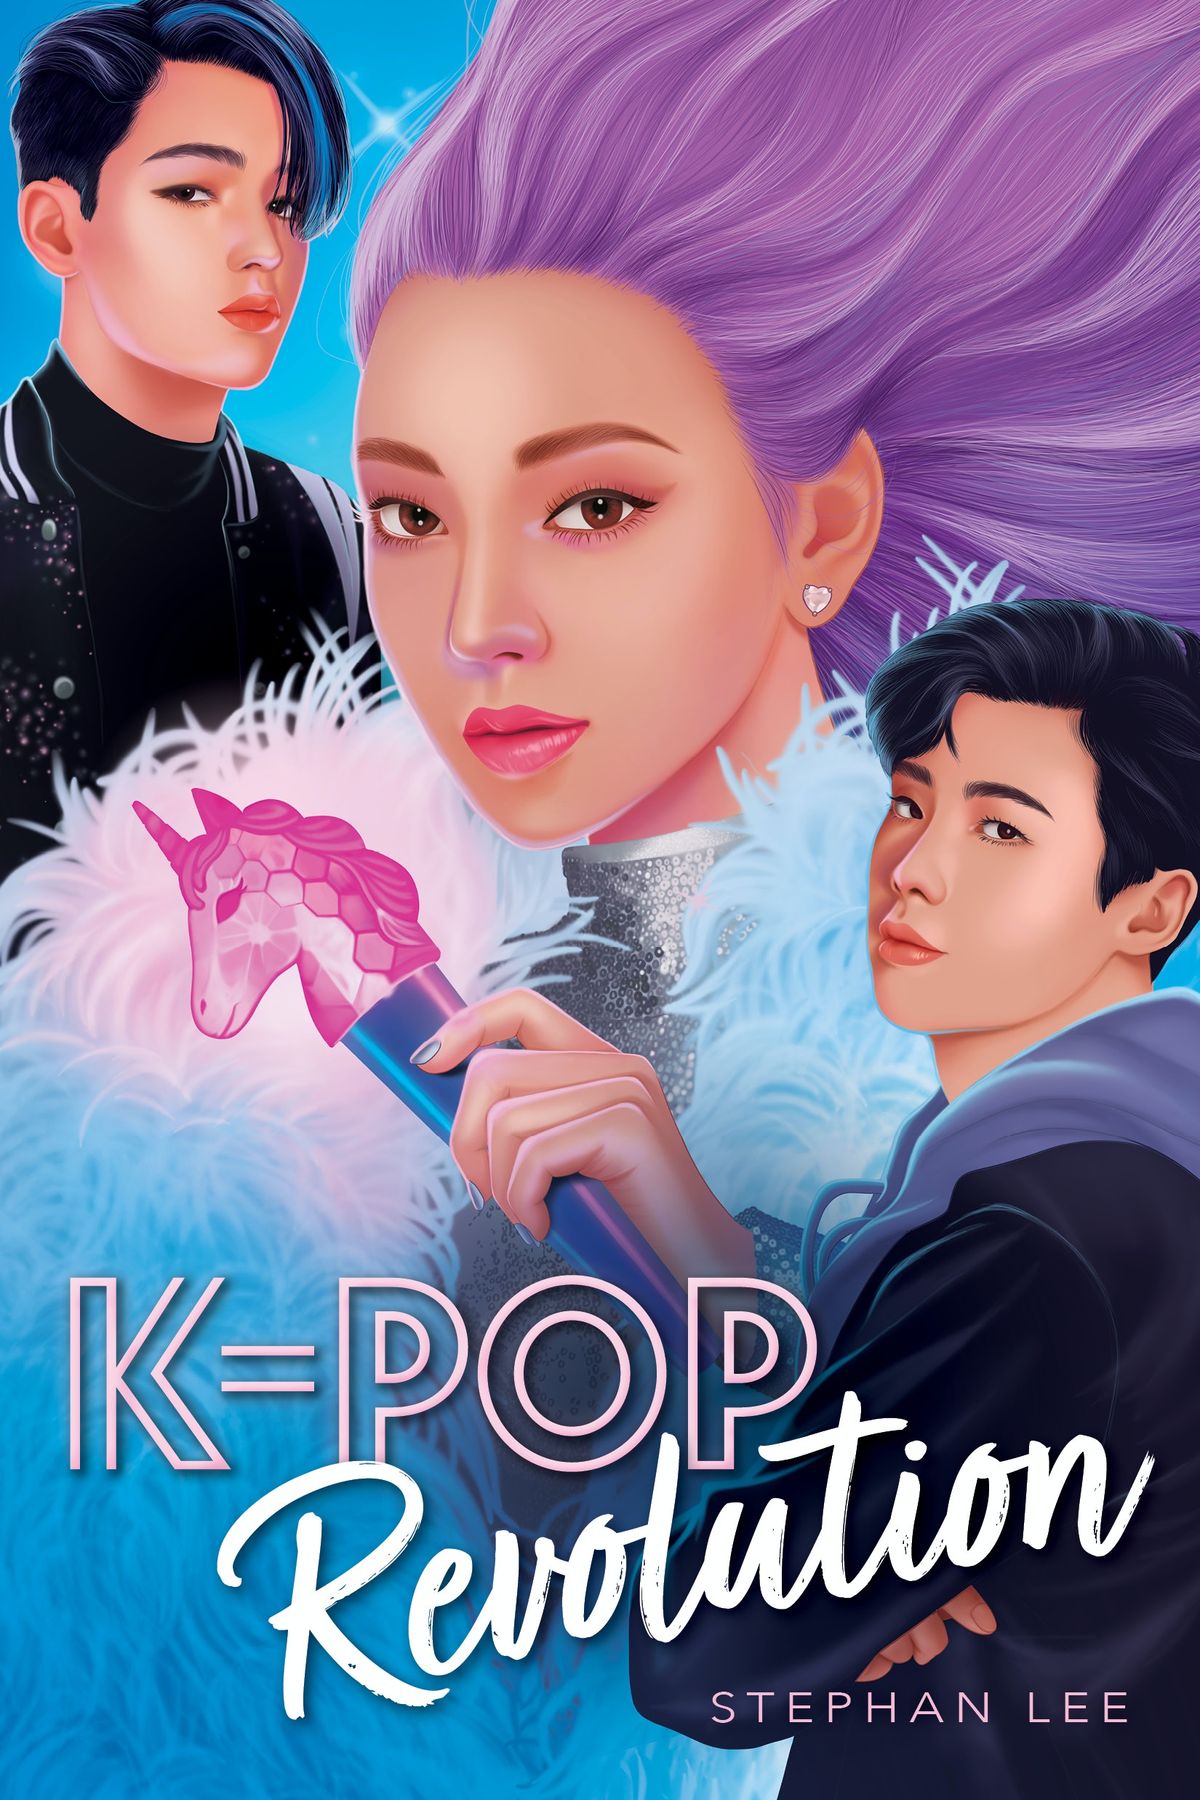 Получите первый взгляд на конфиденциальное продолжение K-Pop Стефана Ли, K-Pop Revolution